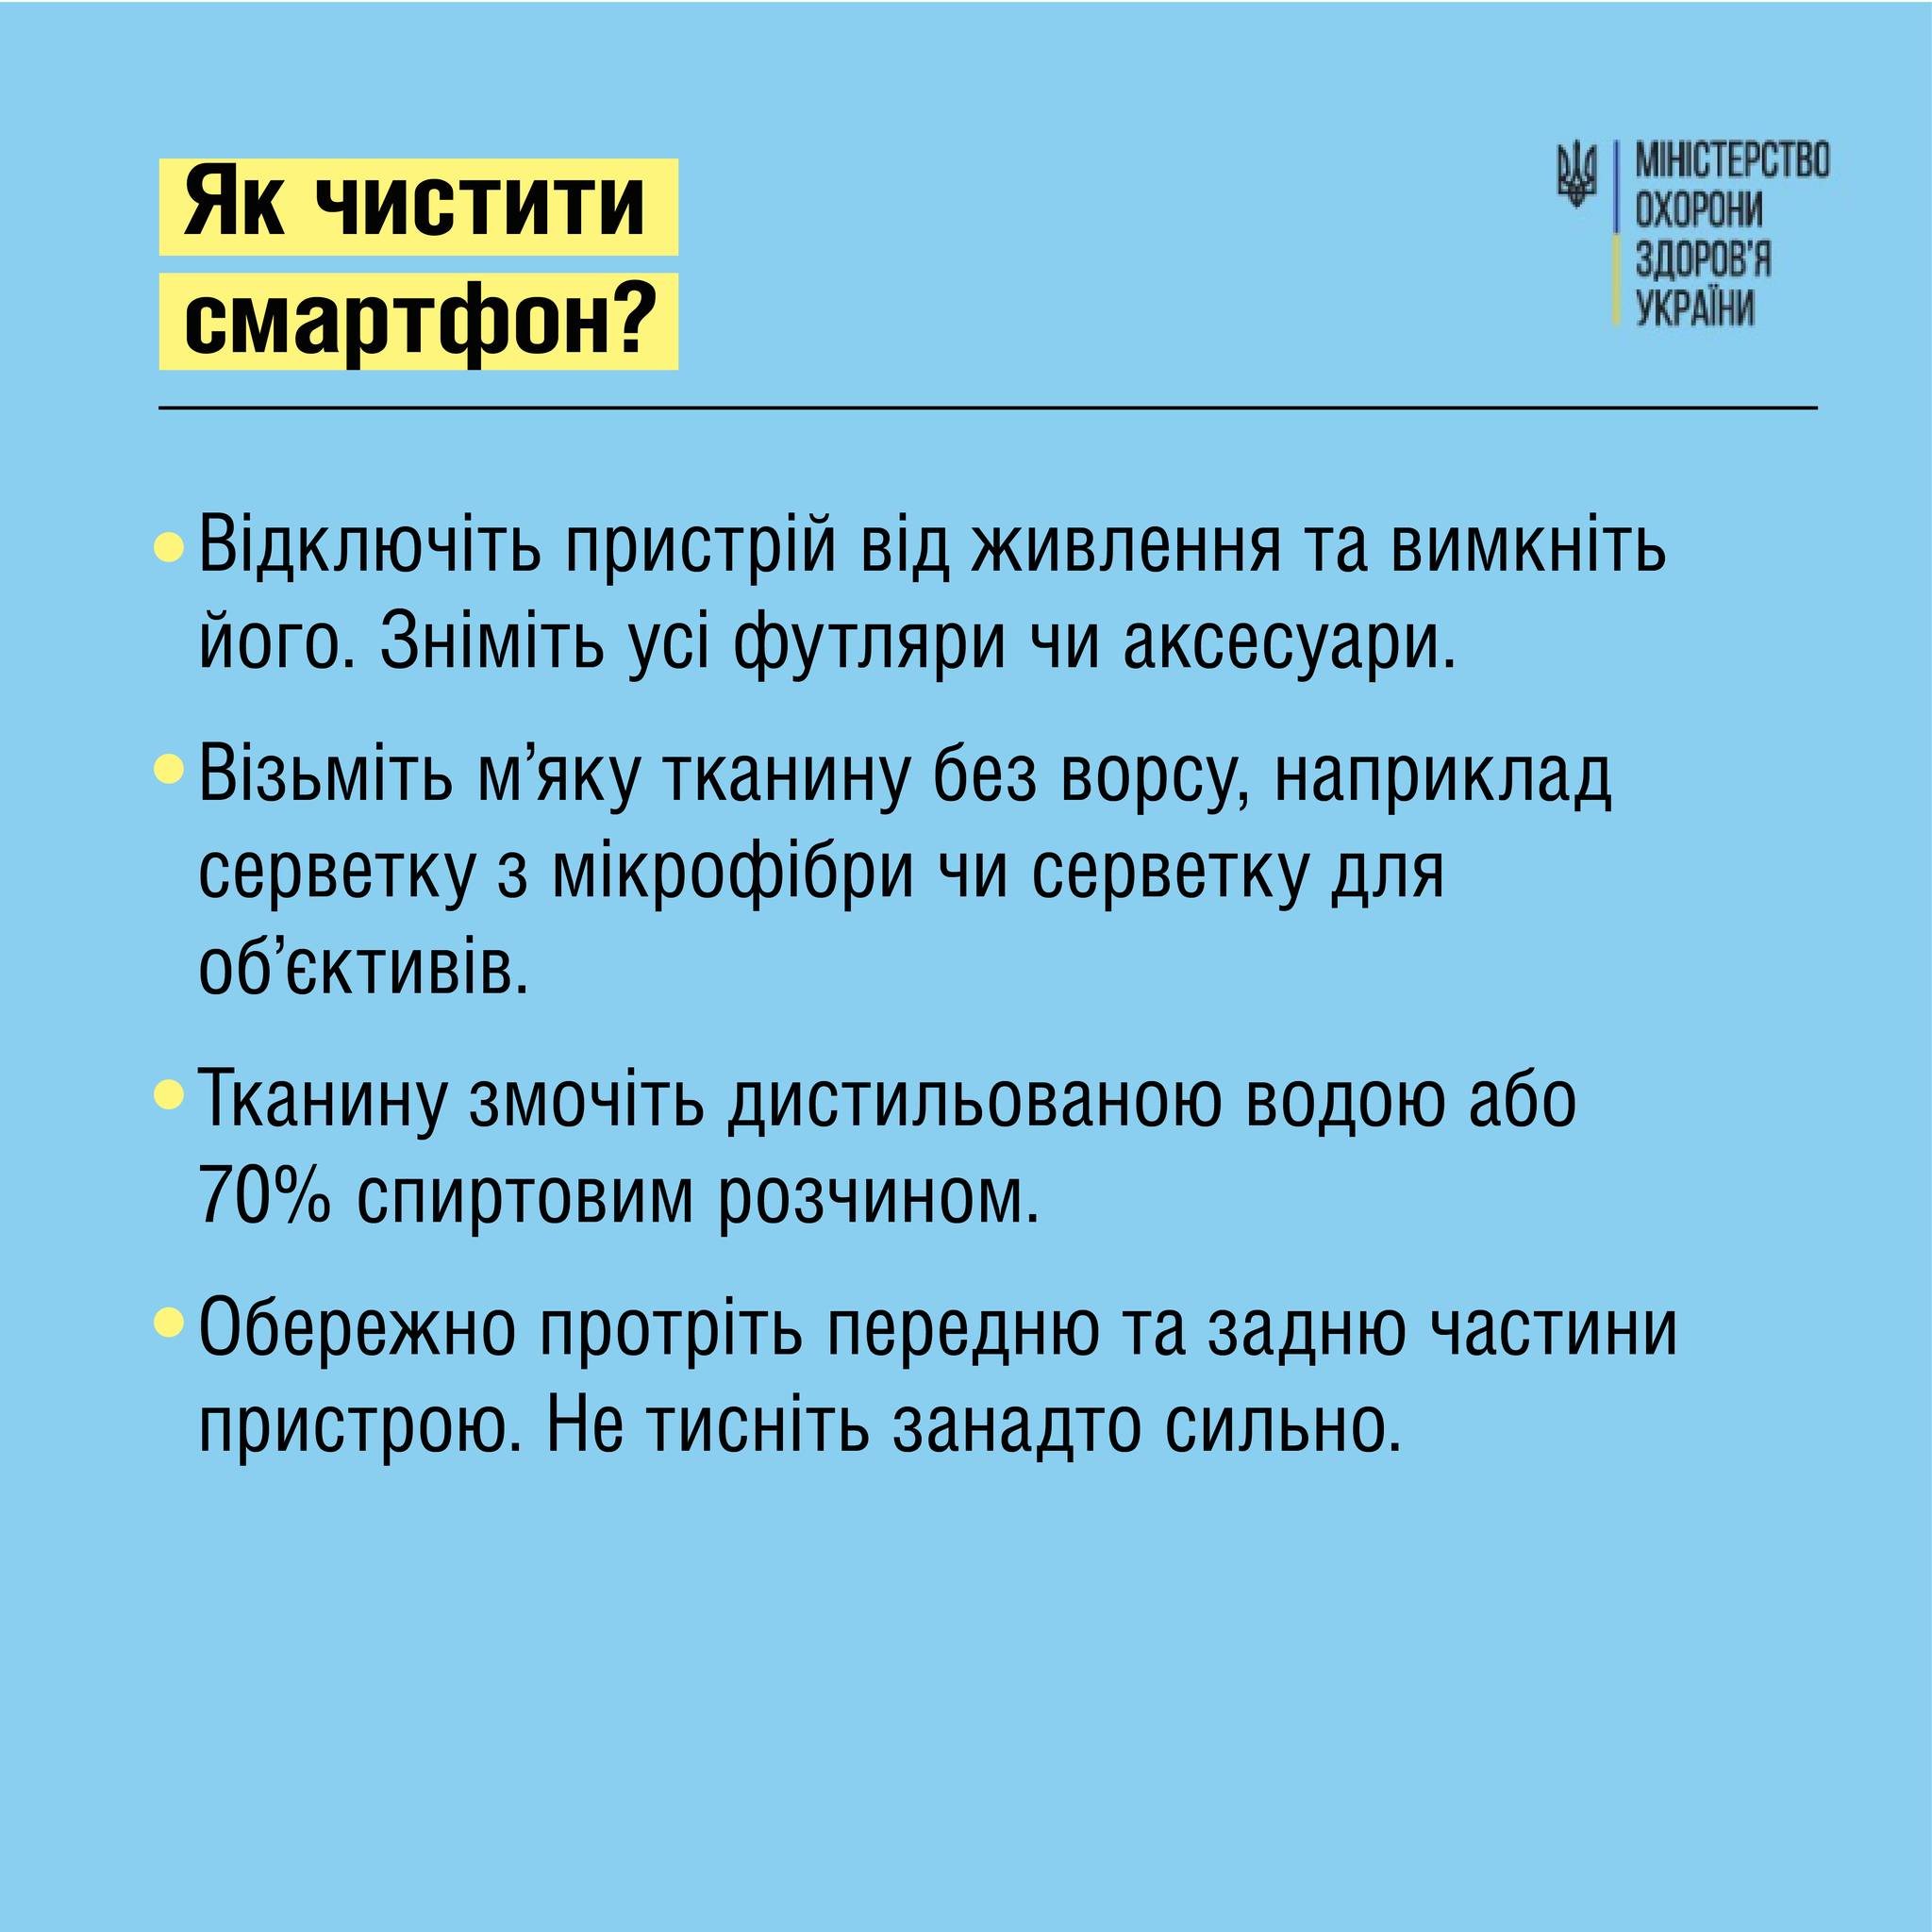 Советы МОЗ о чистке смартфона, с.4